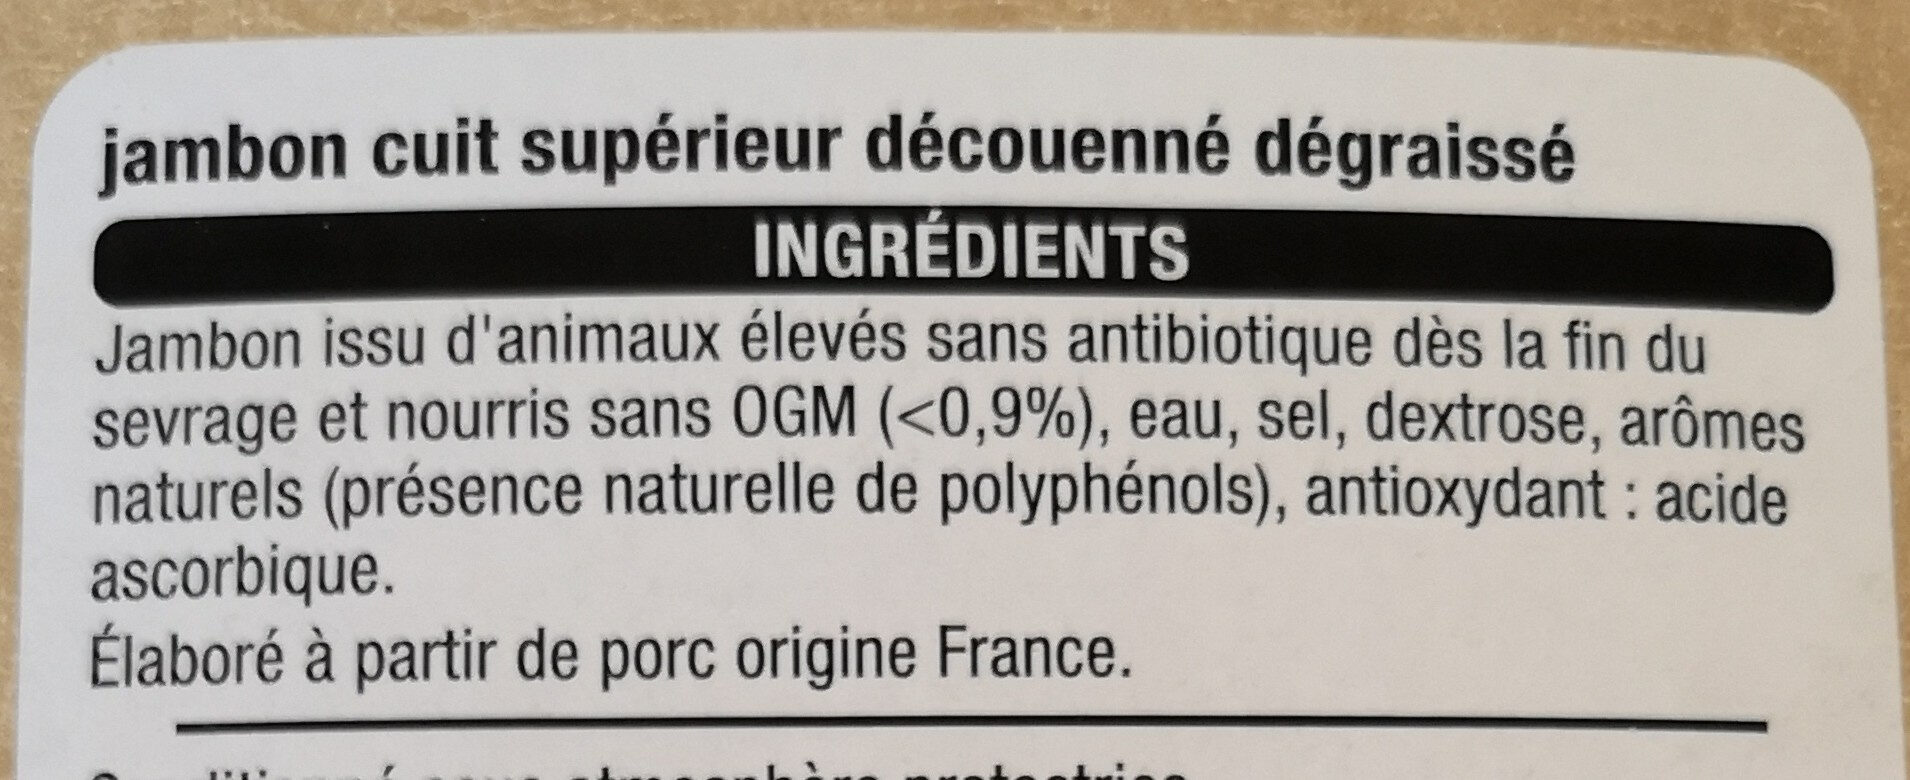 Jambon SupérieurSans couenneConservation Sans Nitrite grâce aux extraits végétaux et antioxydants - Ingredients - fr